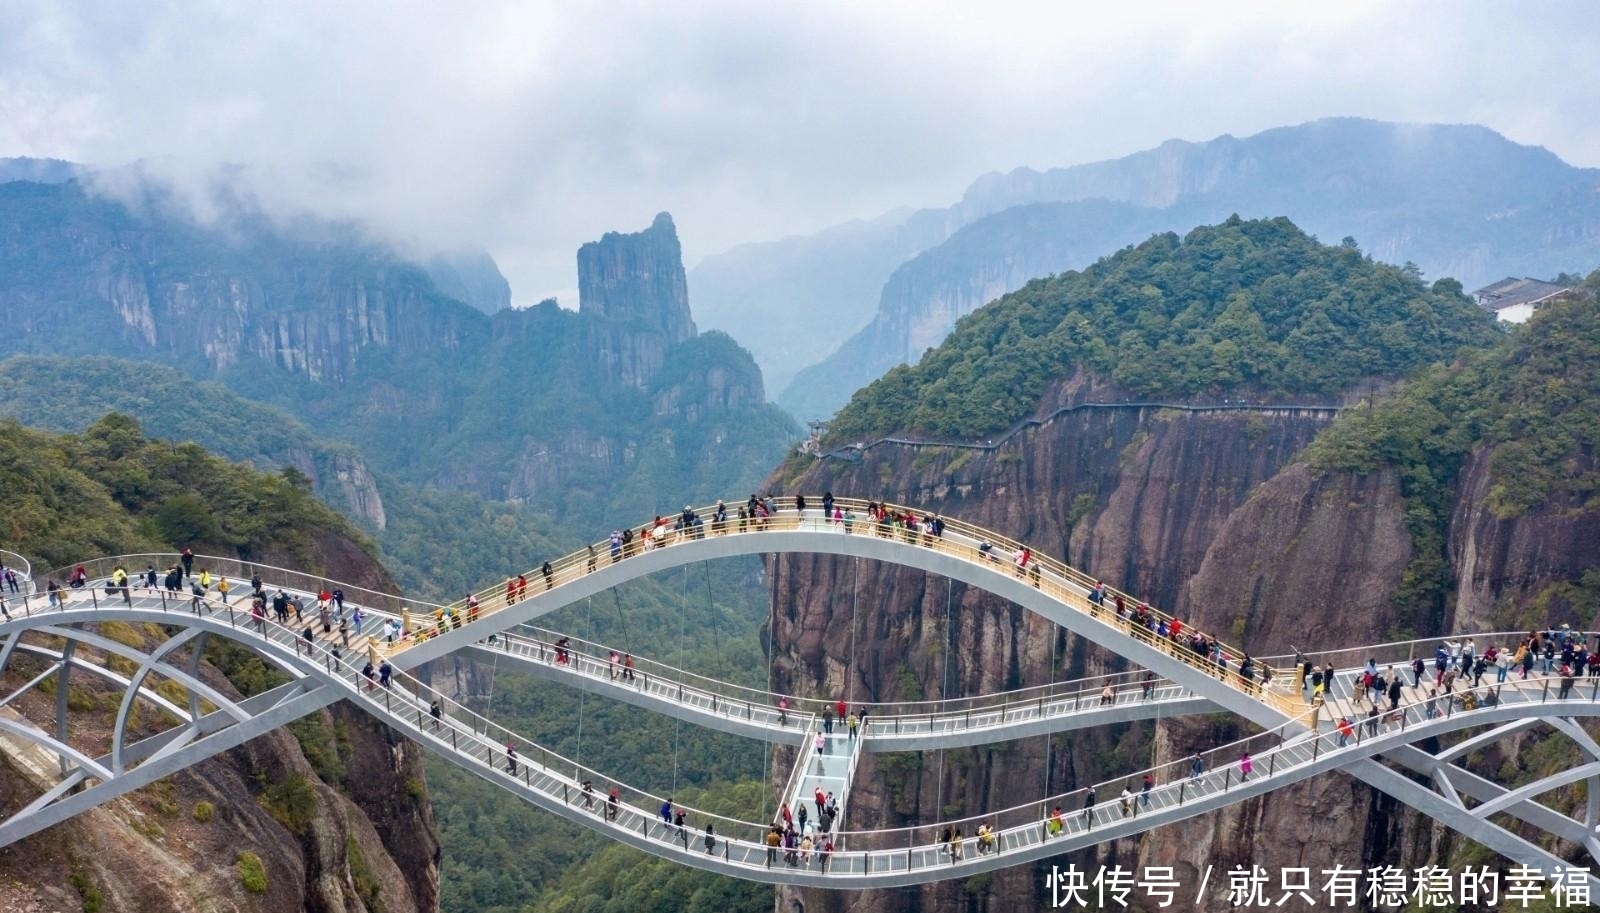 世界上最长人行悬索桥对外开放，吸引众多旅游者纷纷踏来，欣赏与大自然浑然一体美景